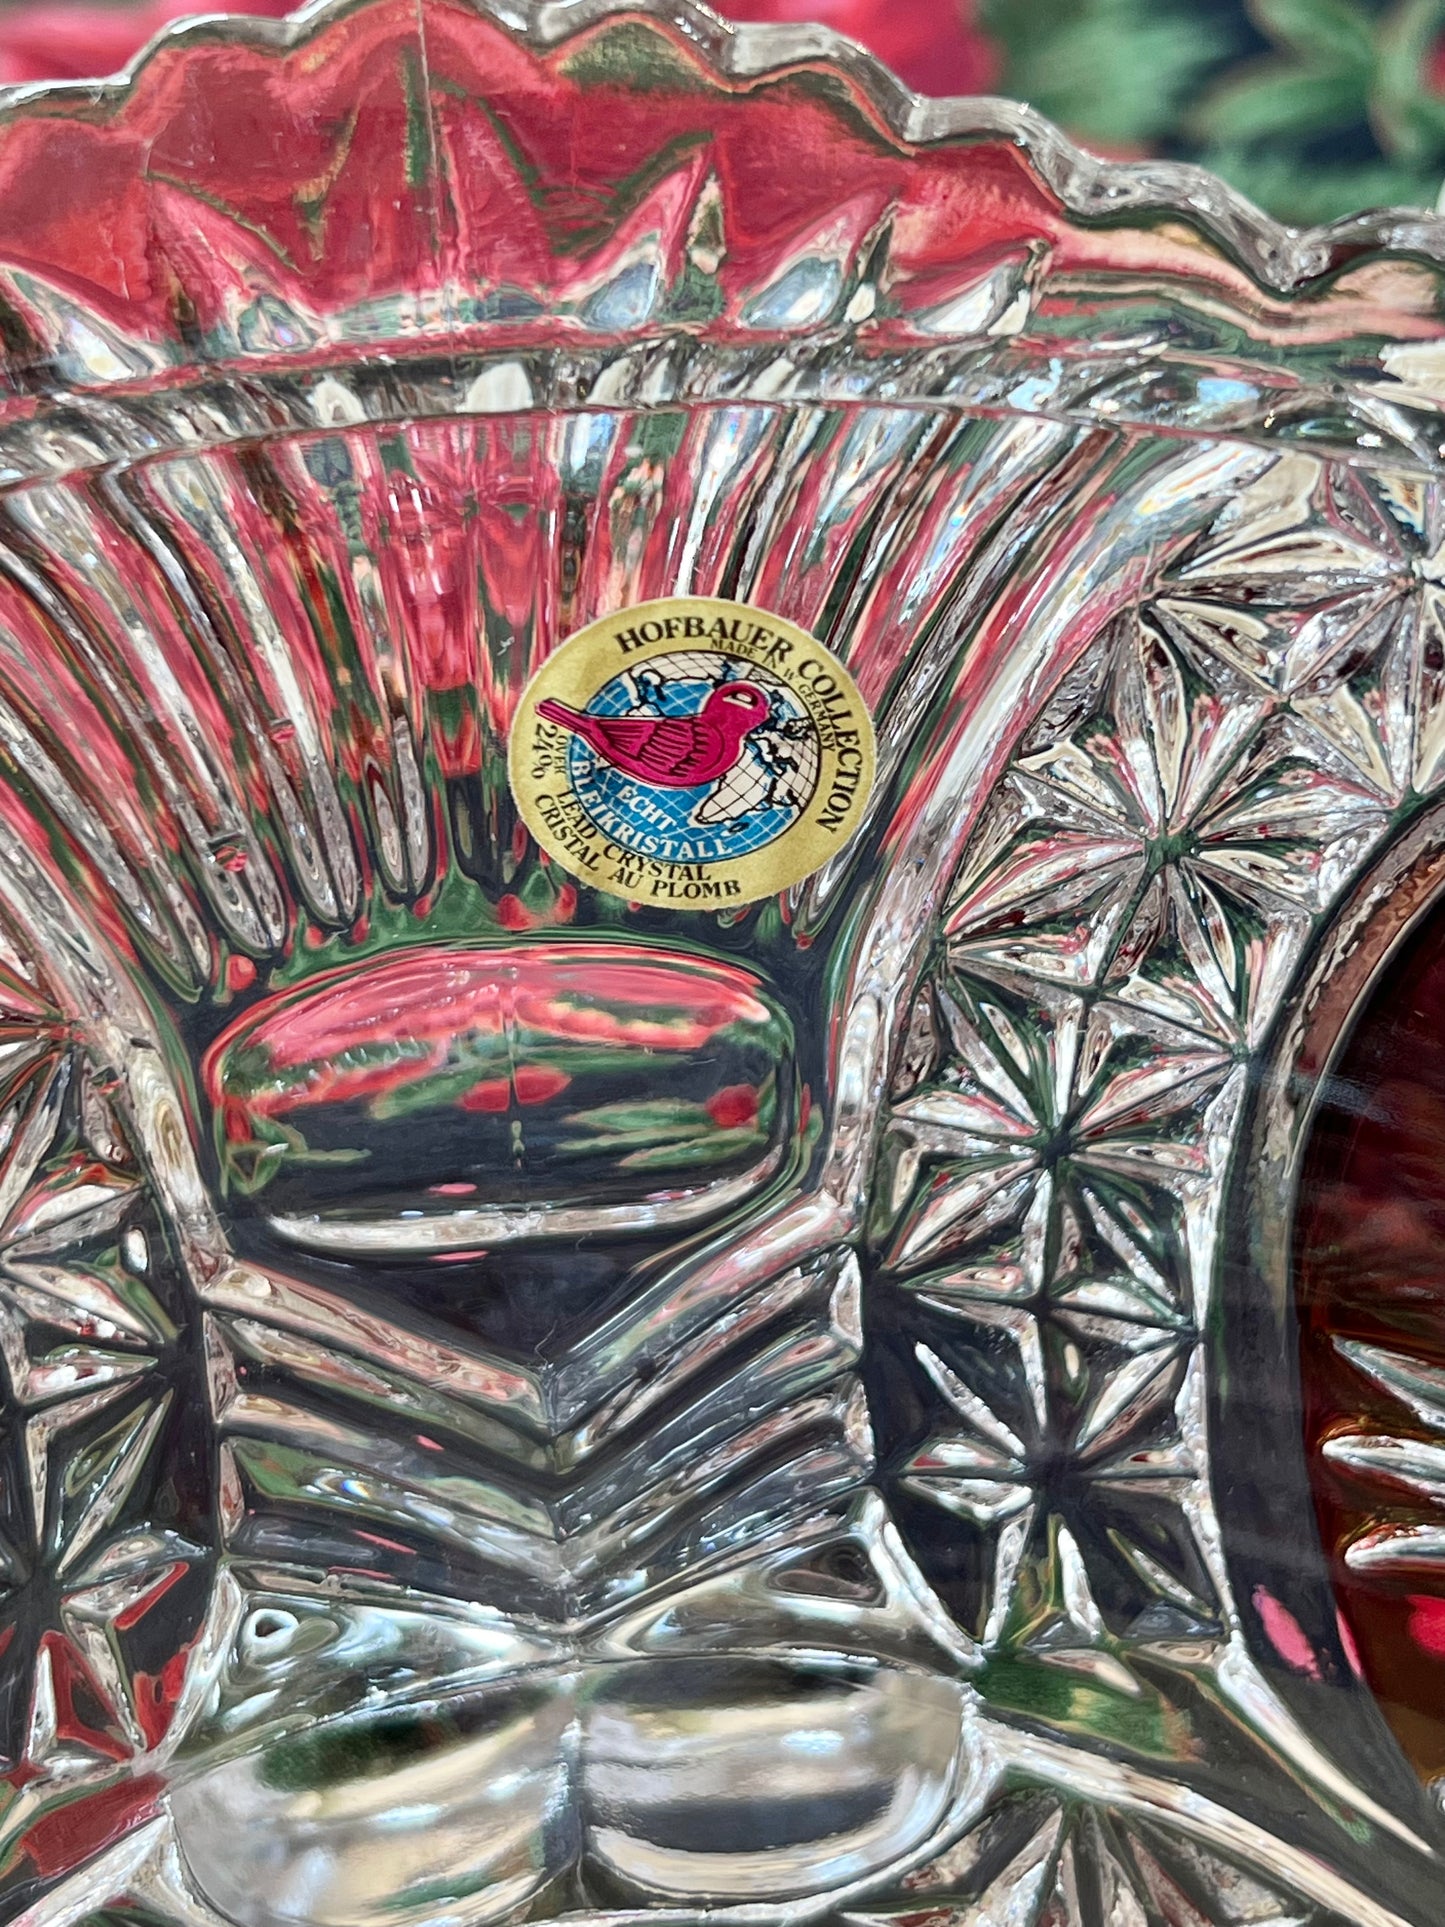 Vintage Hofbauer Byrdes Crystal Footed Bowl, The Ruby